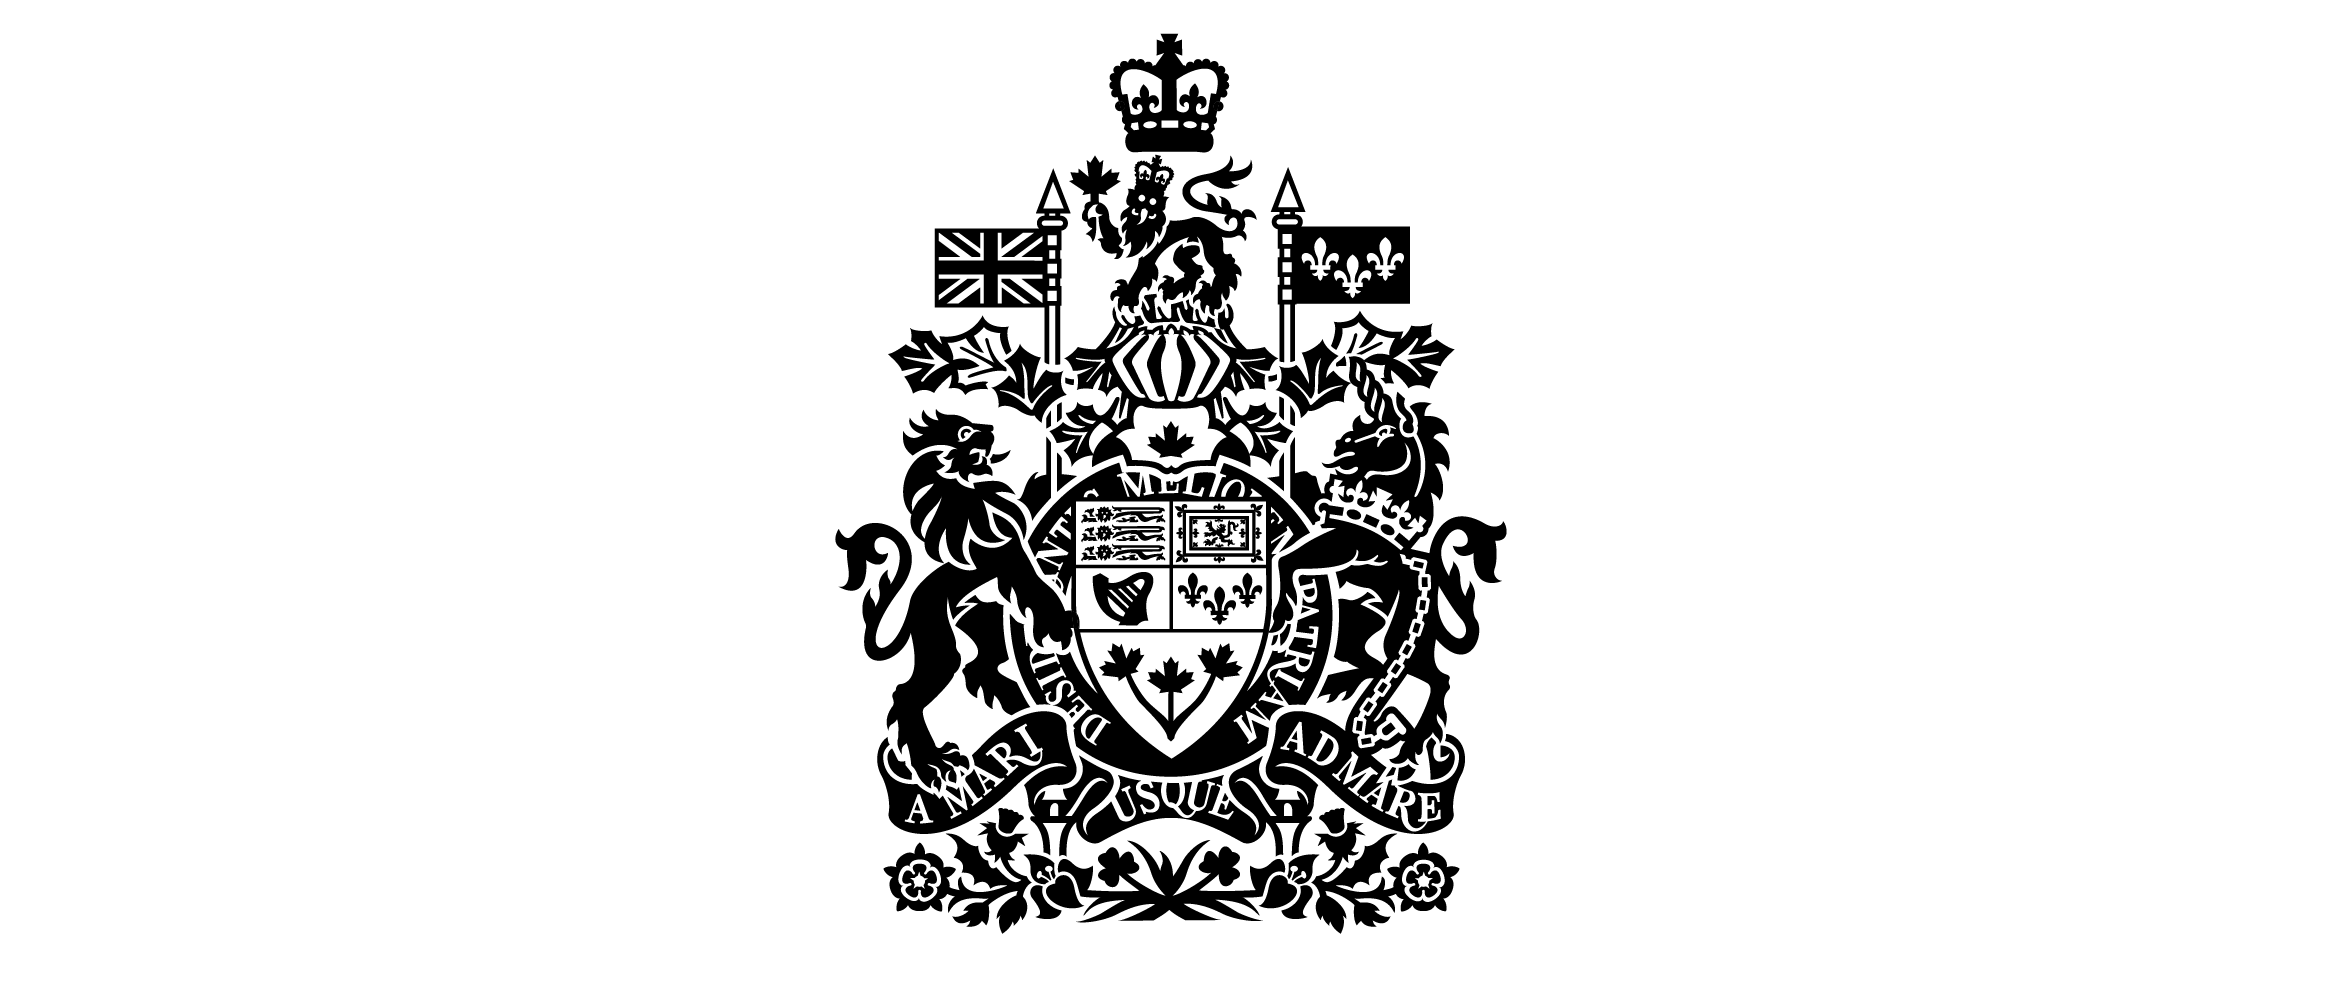 Les armoiries du Canada. L’un des symboles officiels du gouvernement du Canada.